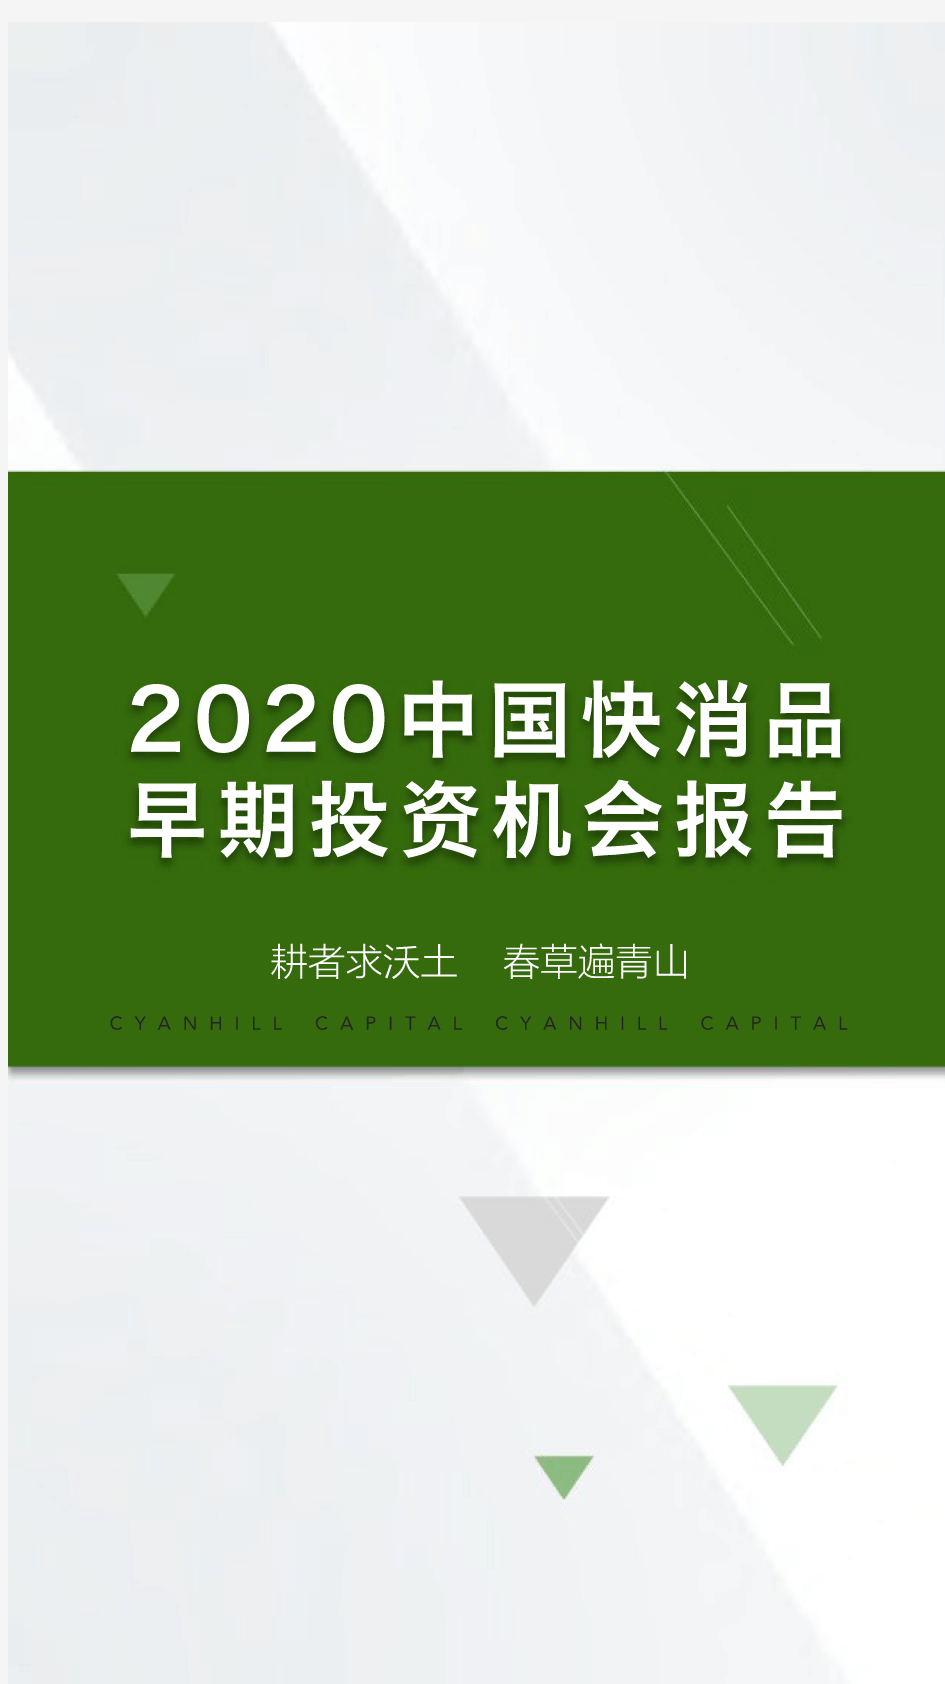 2020中国快消品早期投资机会报告